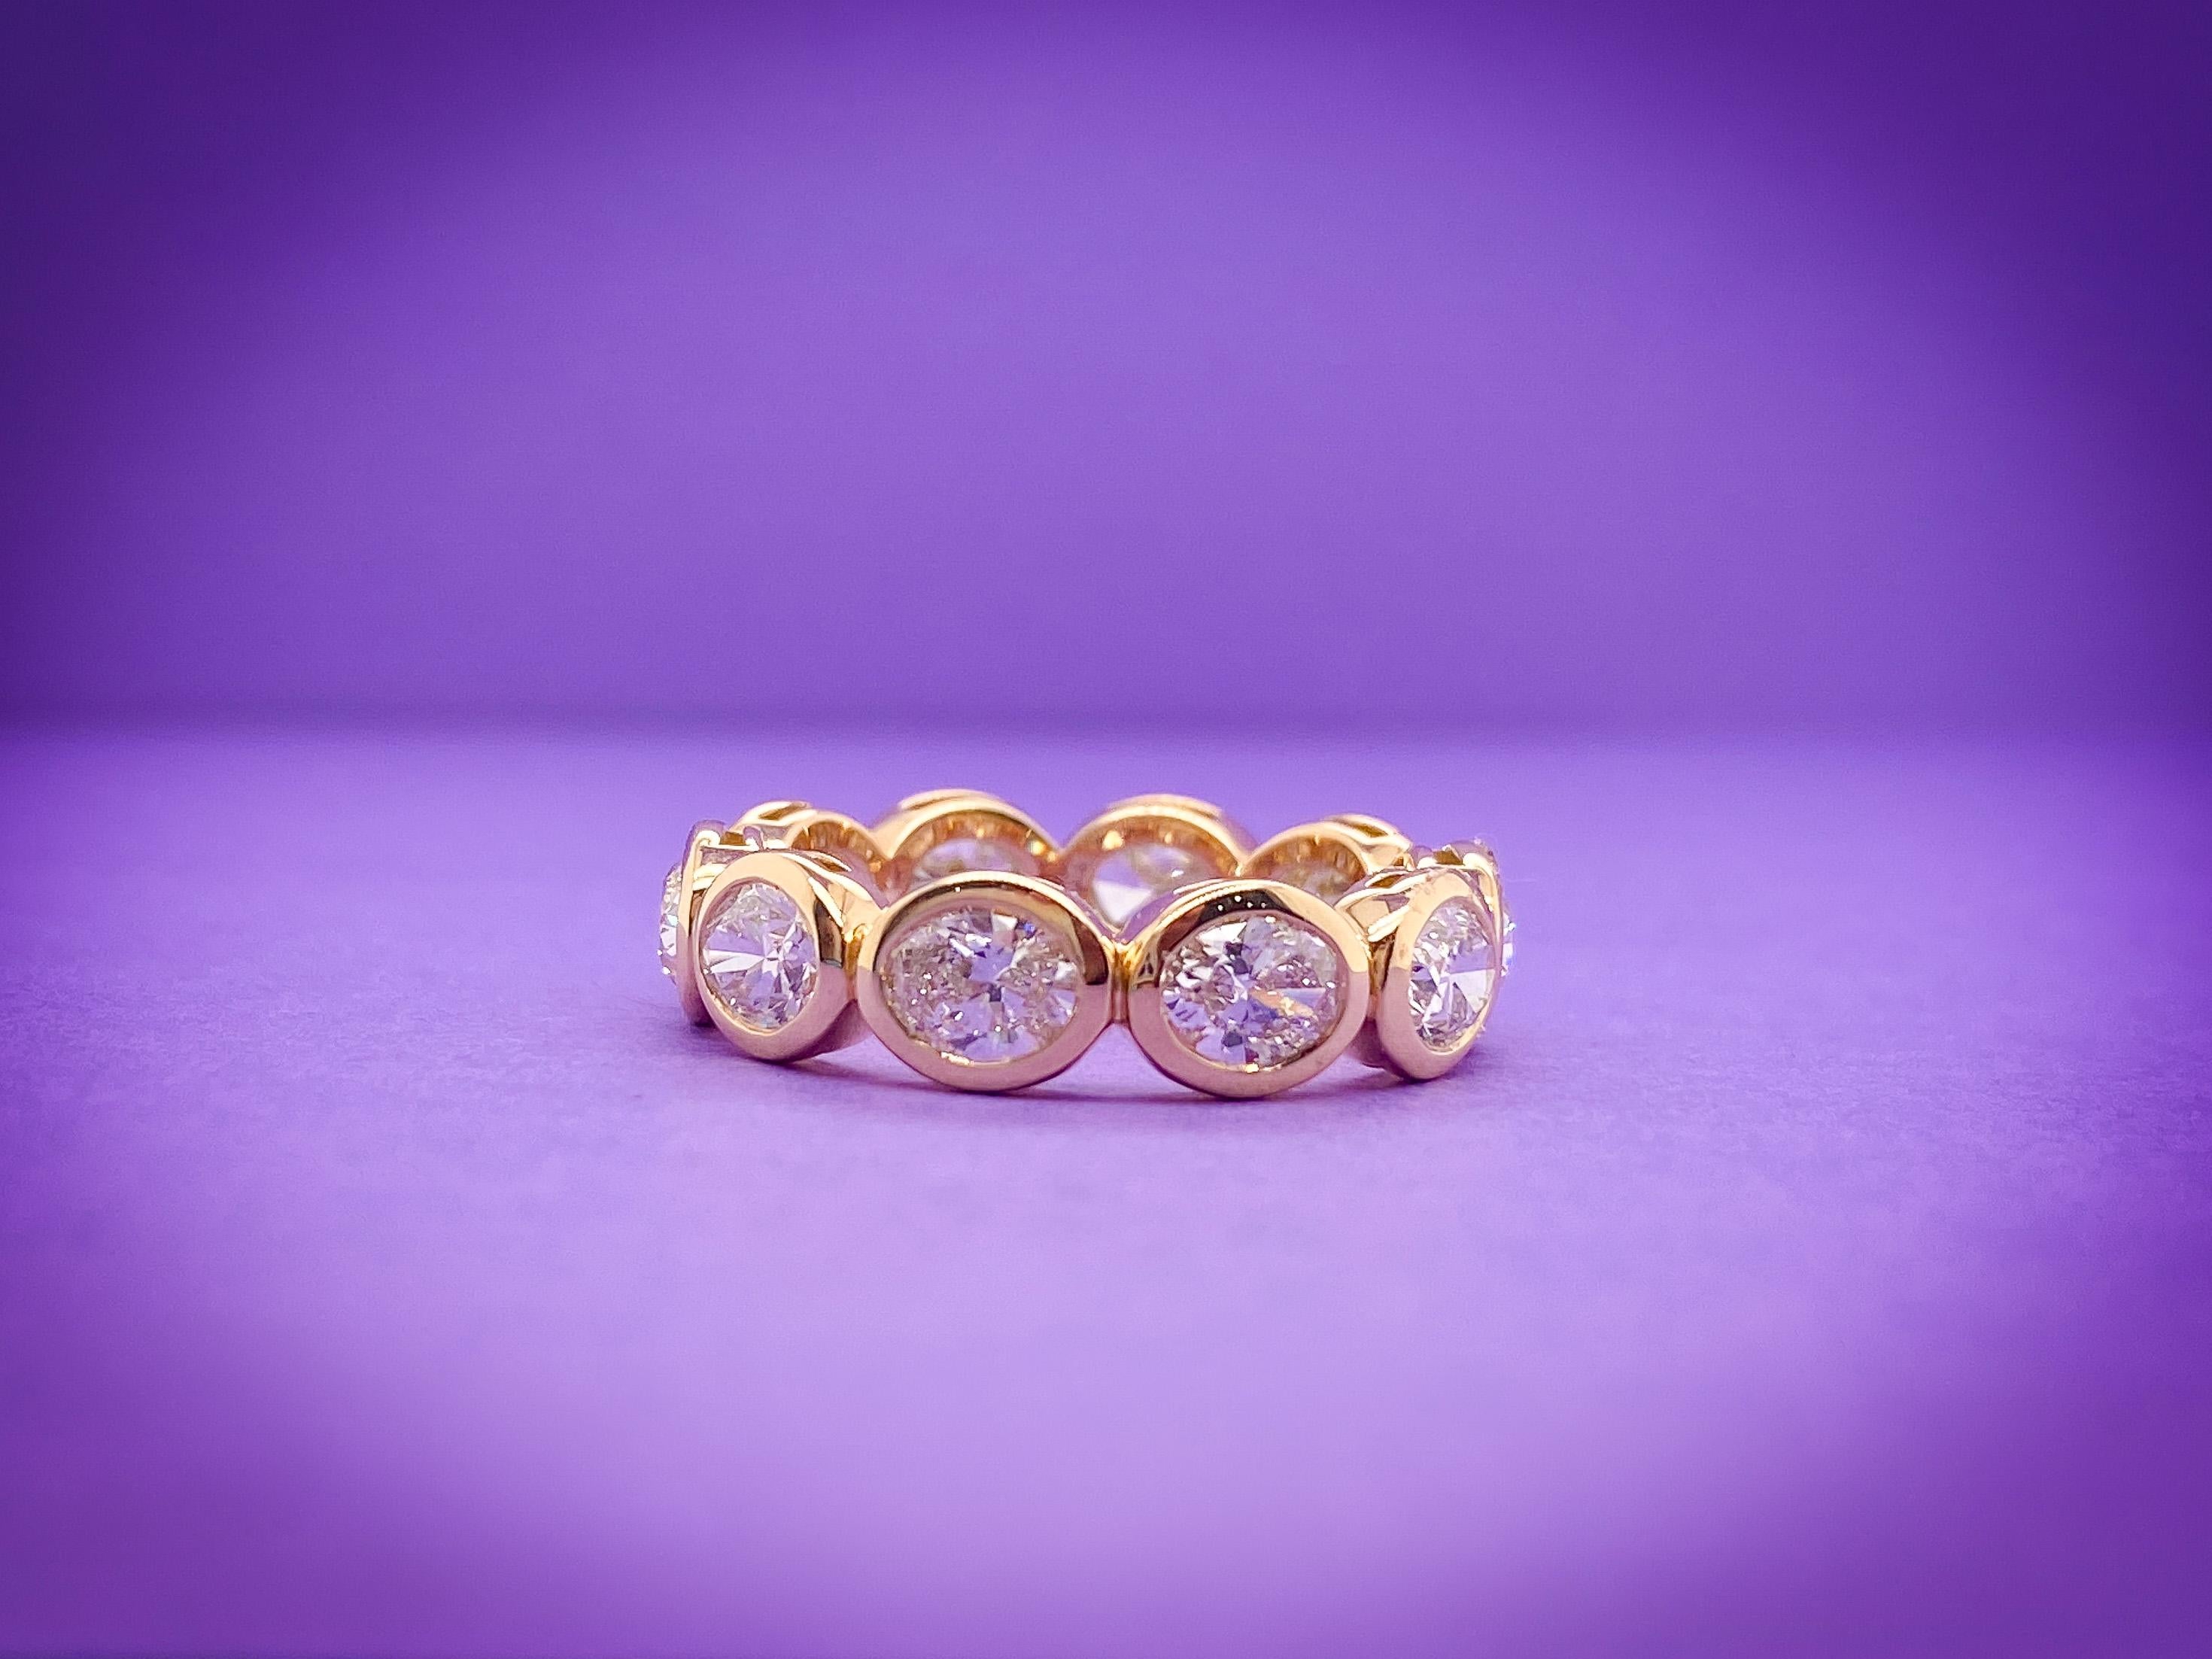 Dieses ovale, horizontale Band besteht aus 10 ovalen Diamanten mit einem Gesamtkaratgewicht von 2,95. Die Steine sind F Farbe, VS-SI Klarheit, in einer Lünettenfassung. Der Ring ist in 18K Gelb in einer Fingergröße 6,5 gefasst. 

Benötigen Sie eine